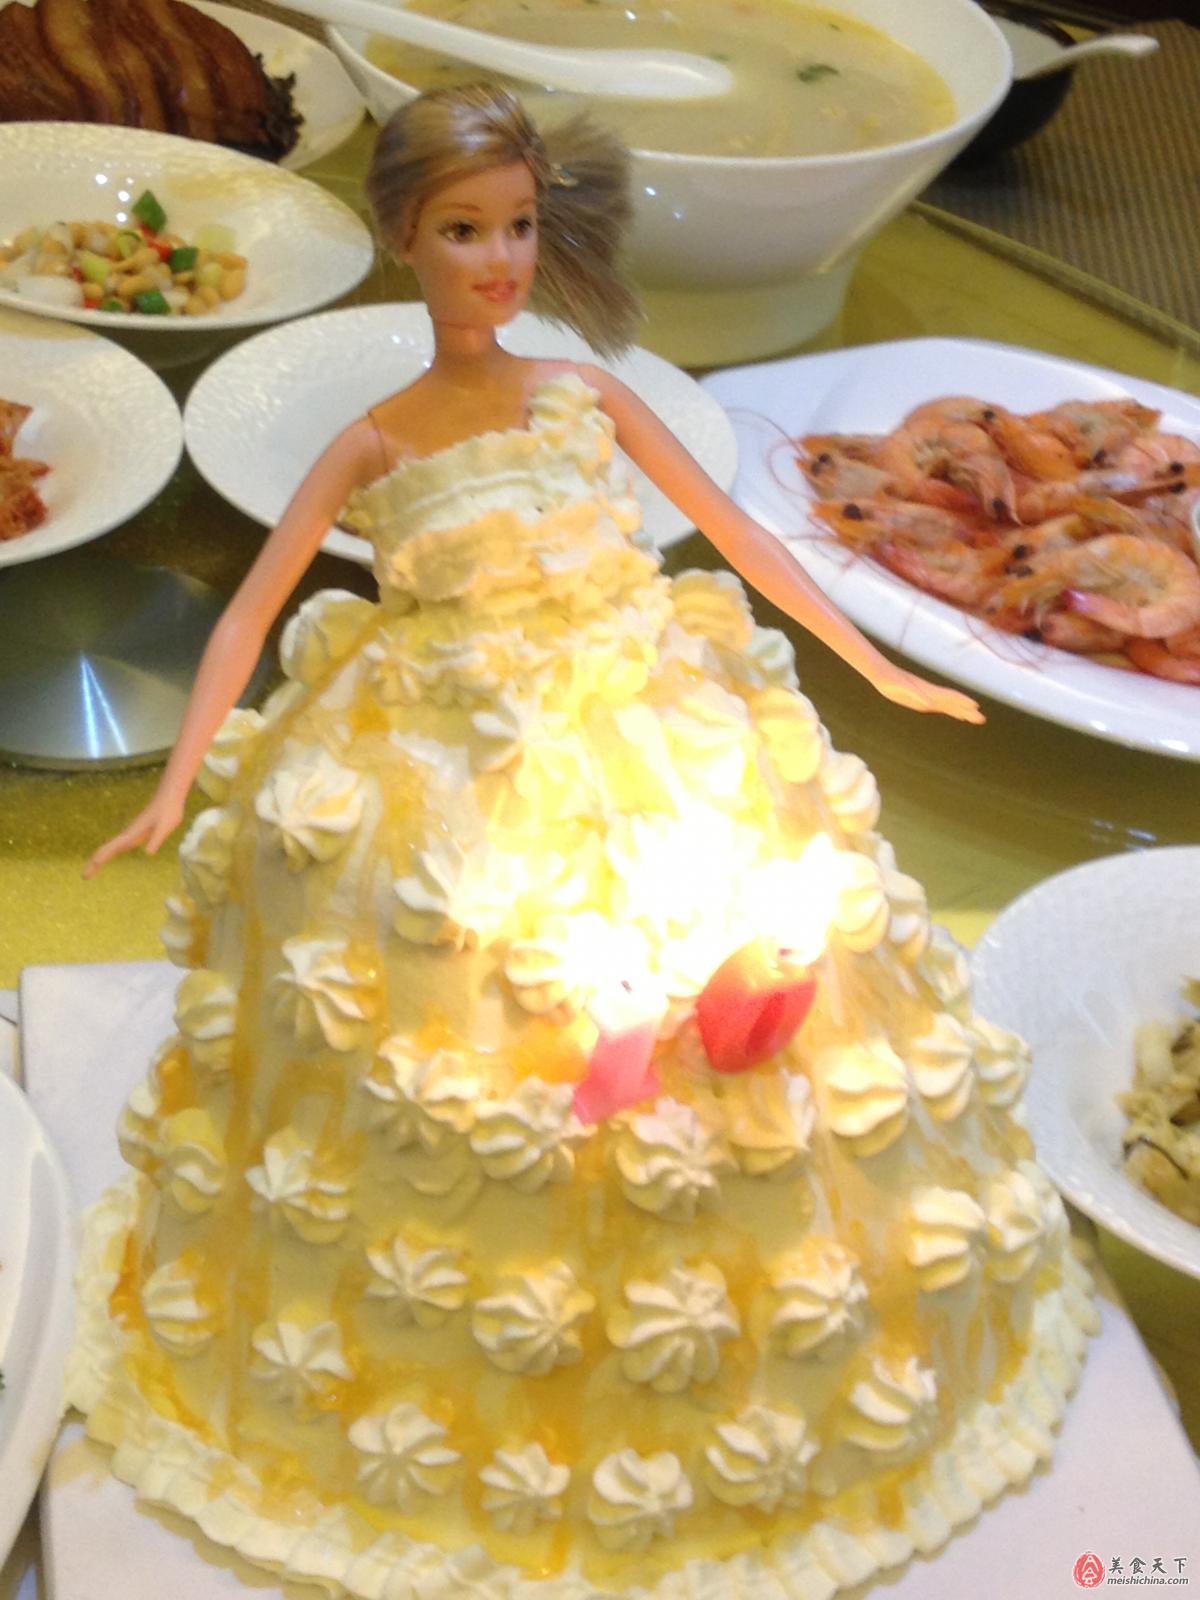 芭比公主蛋糕哪种牌子比较好 芭比公主蛋糕彩虹价格